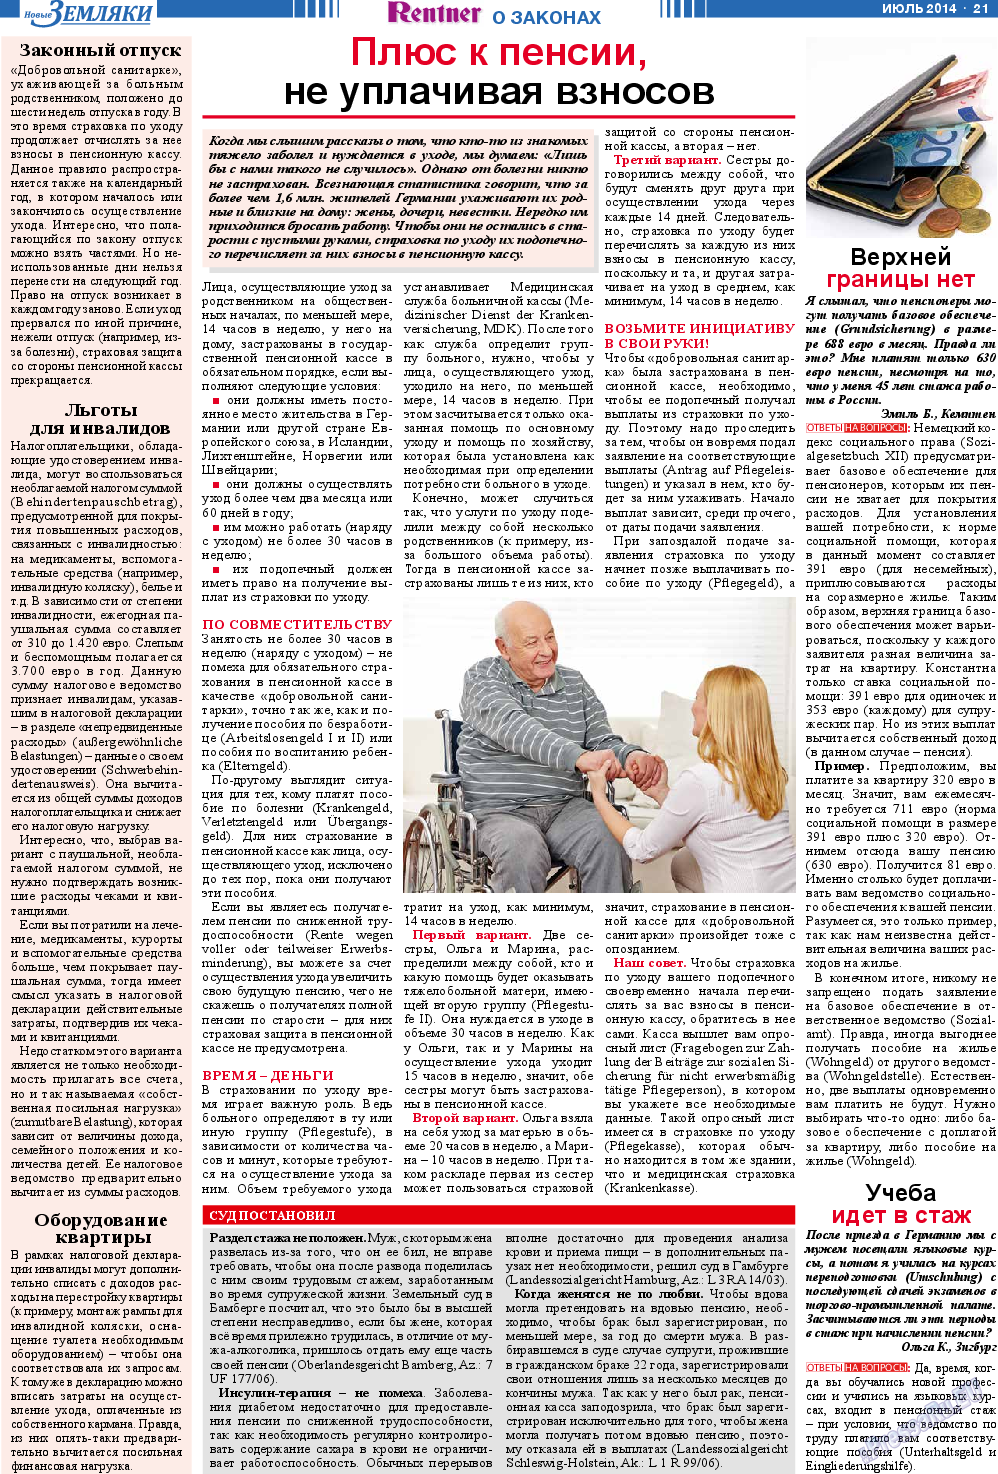 Новые Земляки, газета. 2014 №7 стр.21